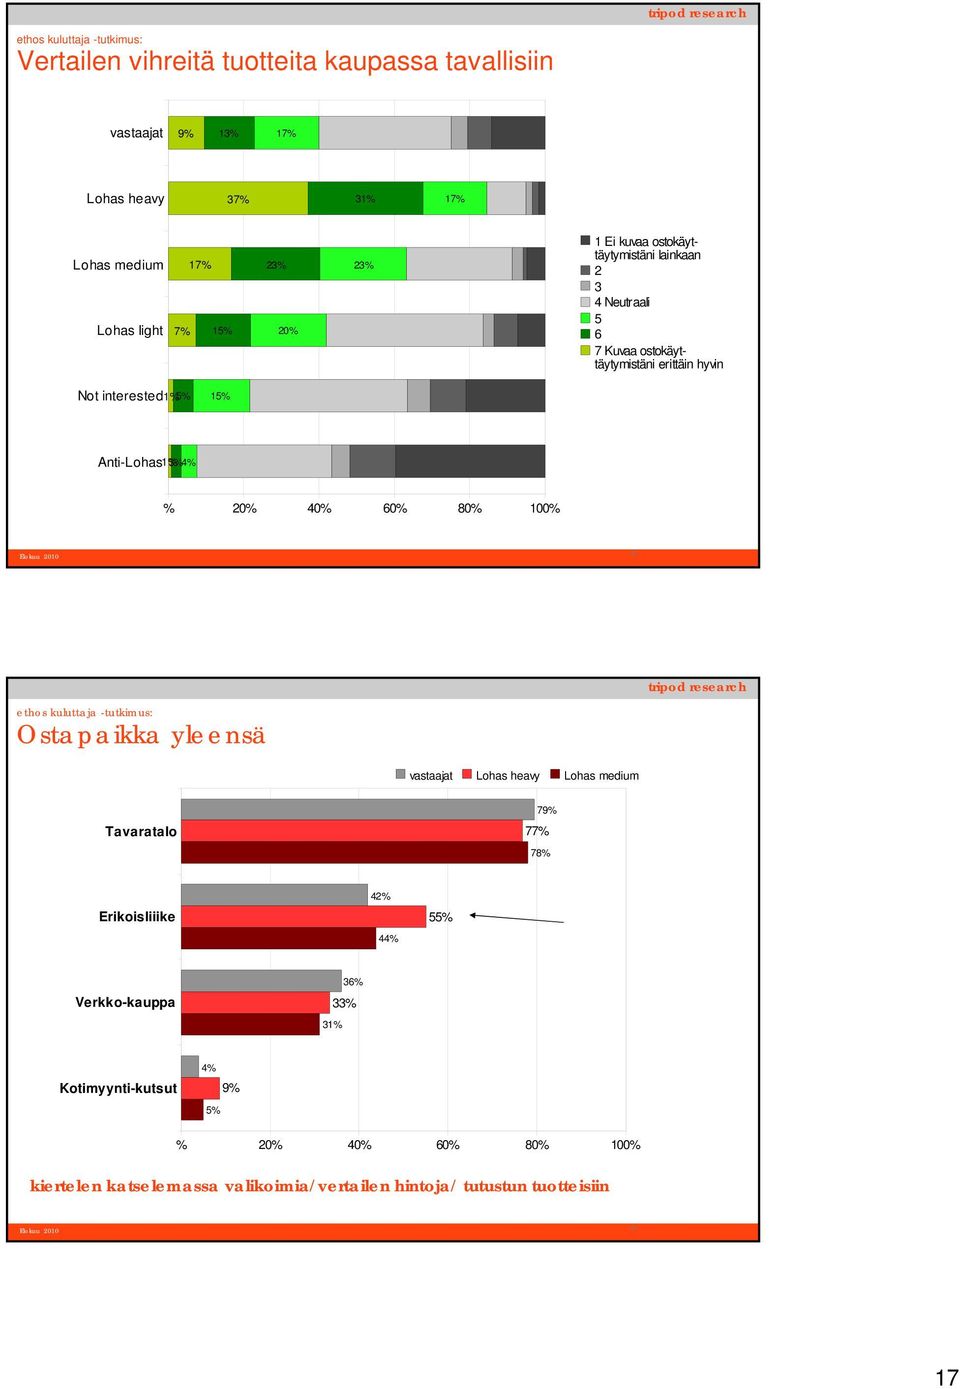 % 60% 80% 100% 33 Ostapaikka yleensä vastaajat Lohas heavy Lohas medium Tavaratalo 79% 77% 78% Erikoisliiike 42% 44% 55%